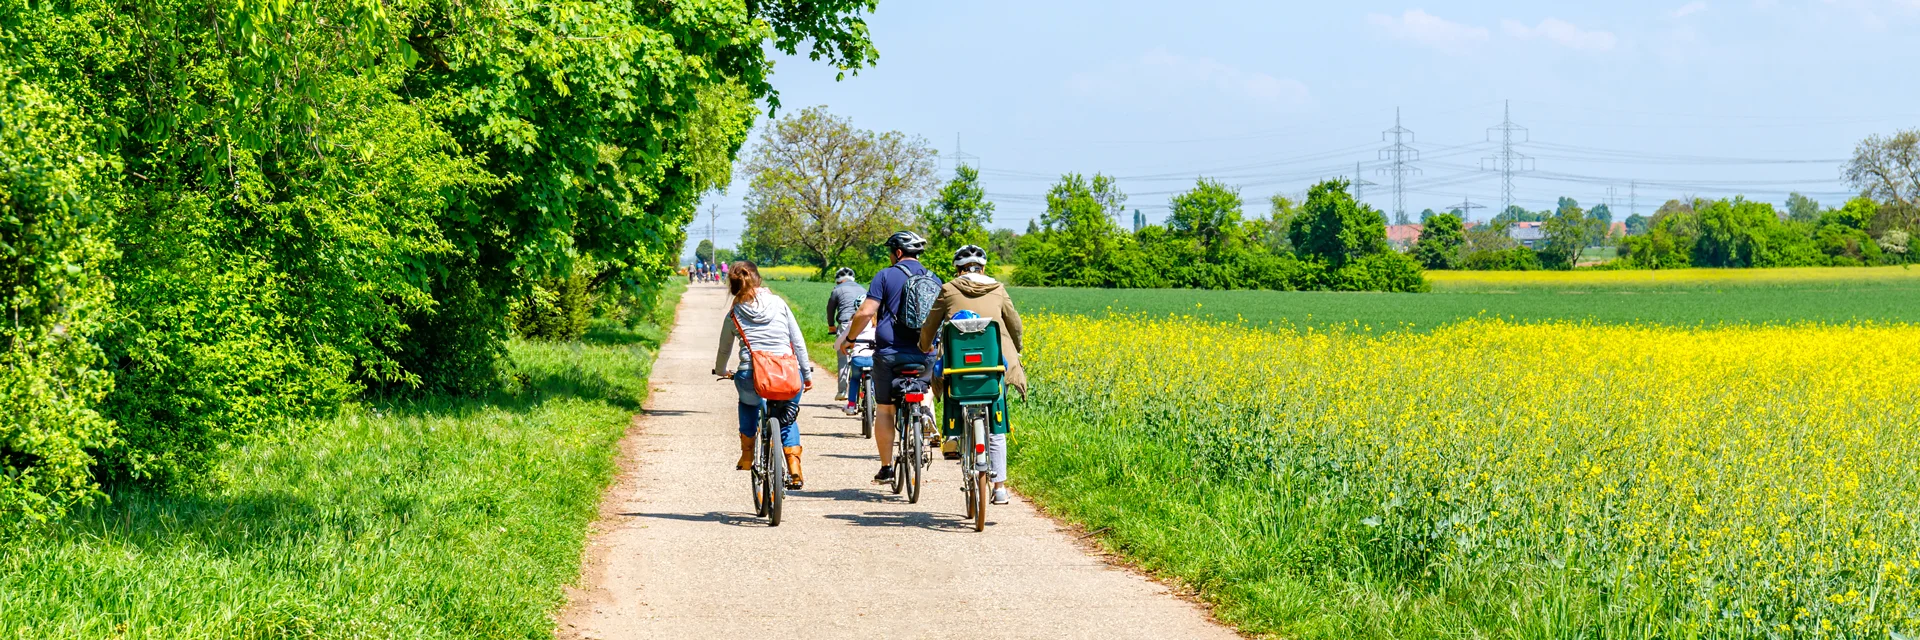 Tandem fietsen huren voor een vakantie met kinderen op de Veluwe - ook fietsreparaties - Edwin Fietsverhuur